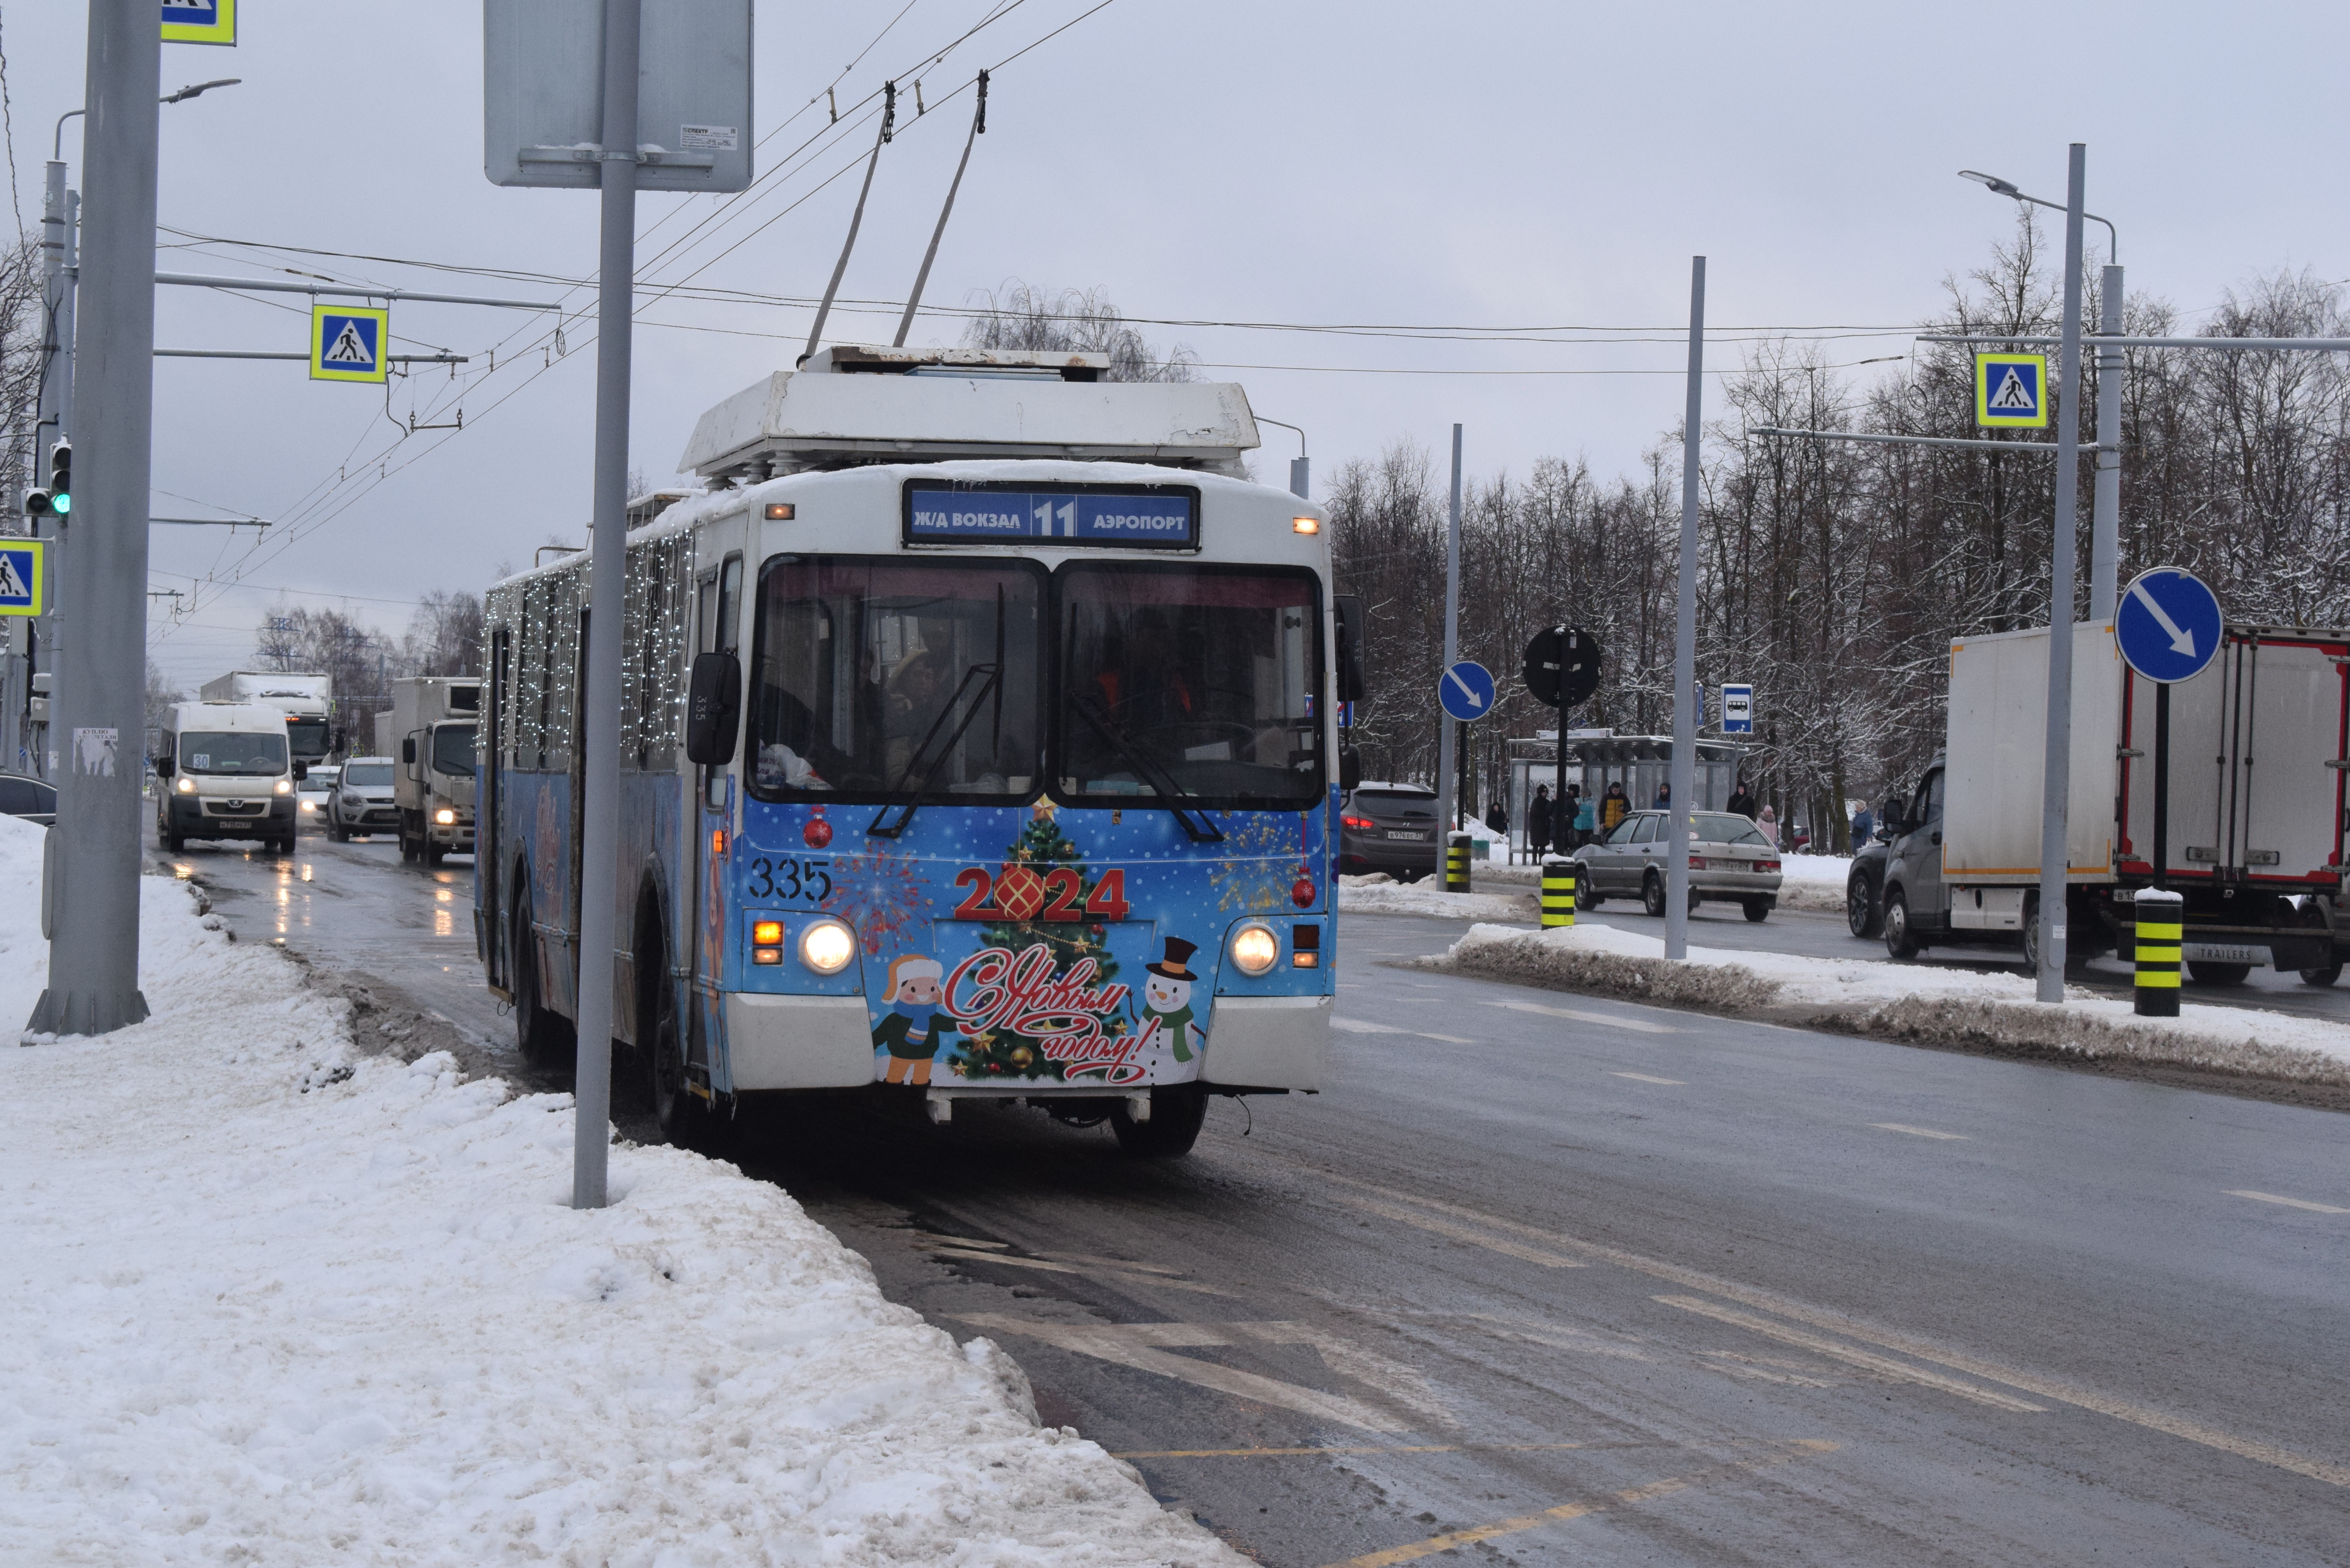 Ивановское троллейбусное предприятие подготовило для своих пассажиров новогодний подарок.